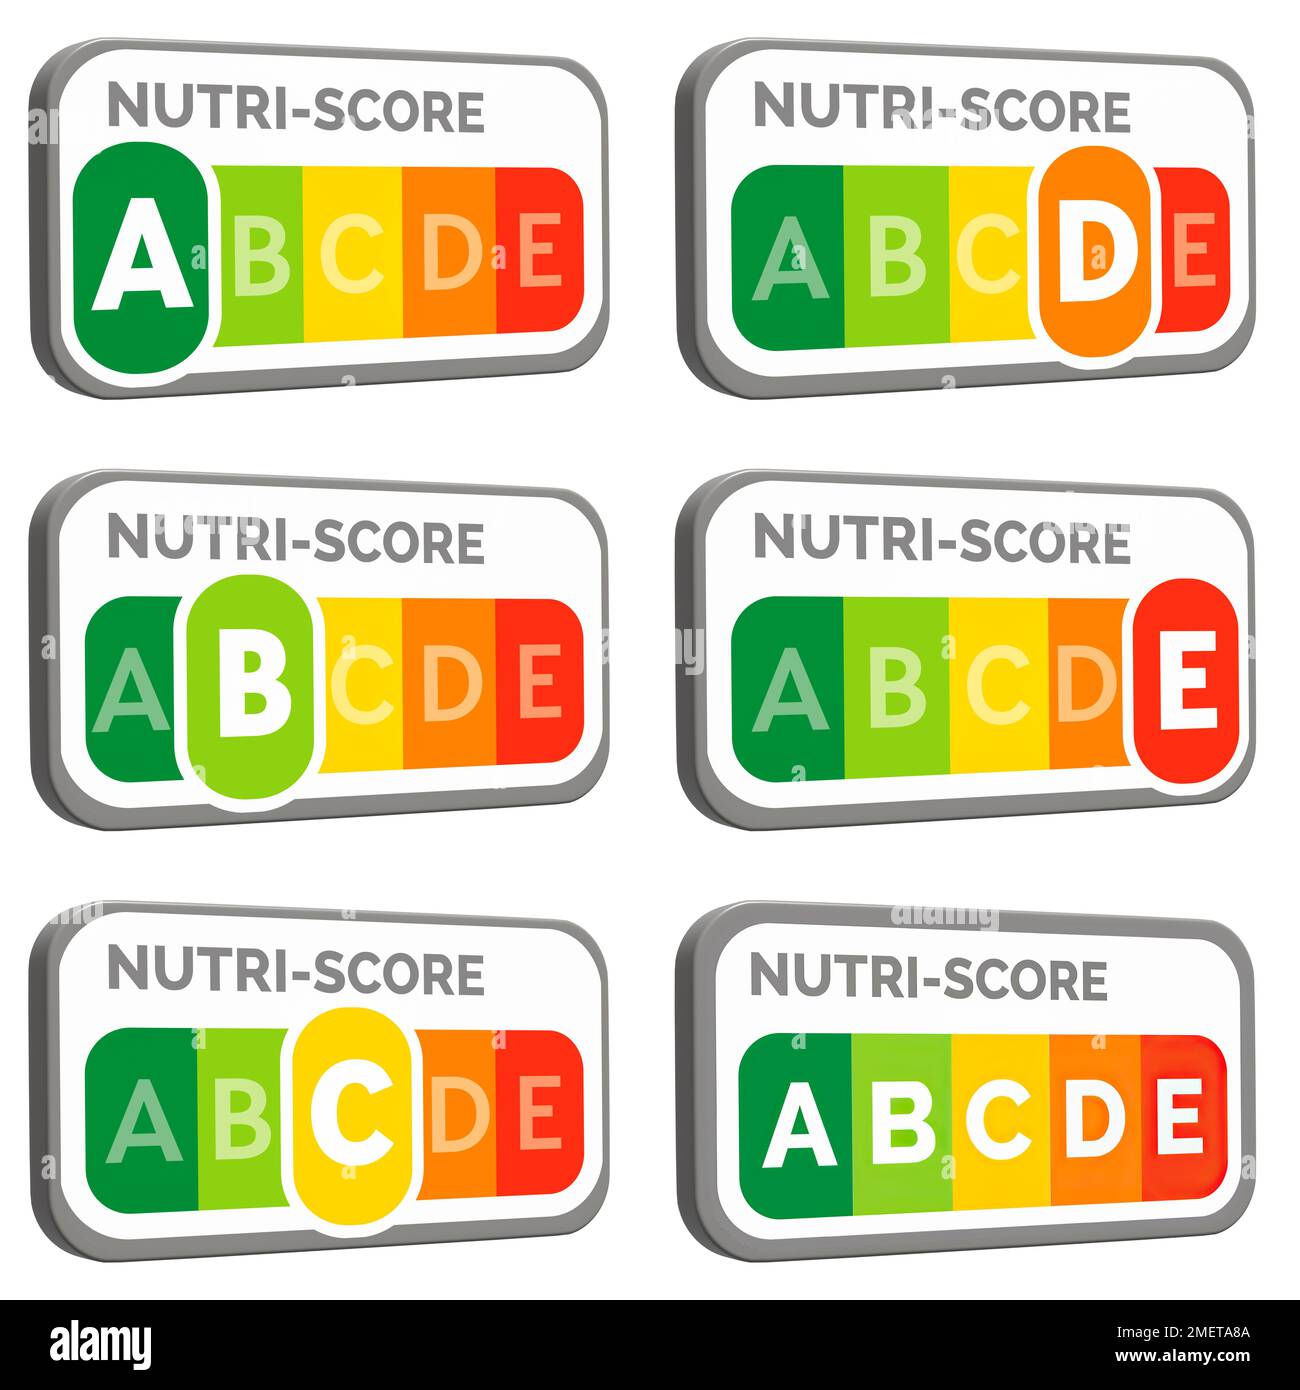 Kennzeichnet A B C D E und neutral des Nährwertkennzeichnungssystems Nutri-Score, das in den meisten Ländern Westeuropas verwendet wird. Schwindende Aussichten Stockfoto